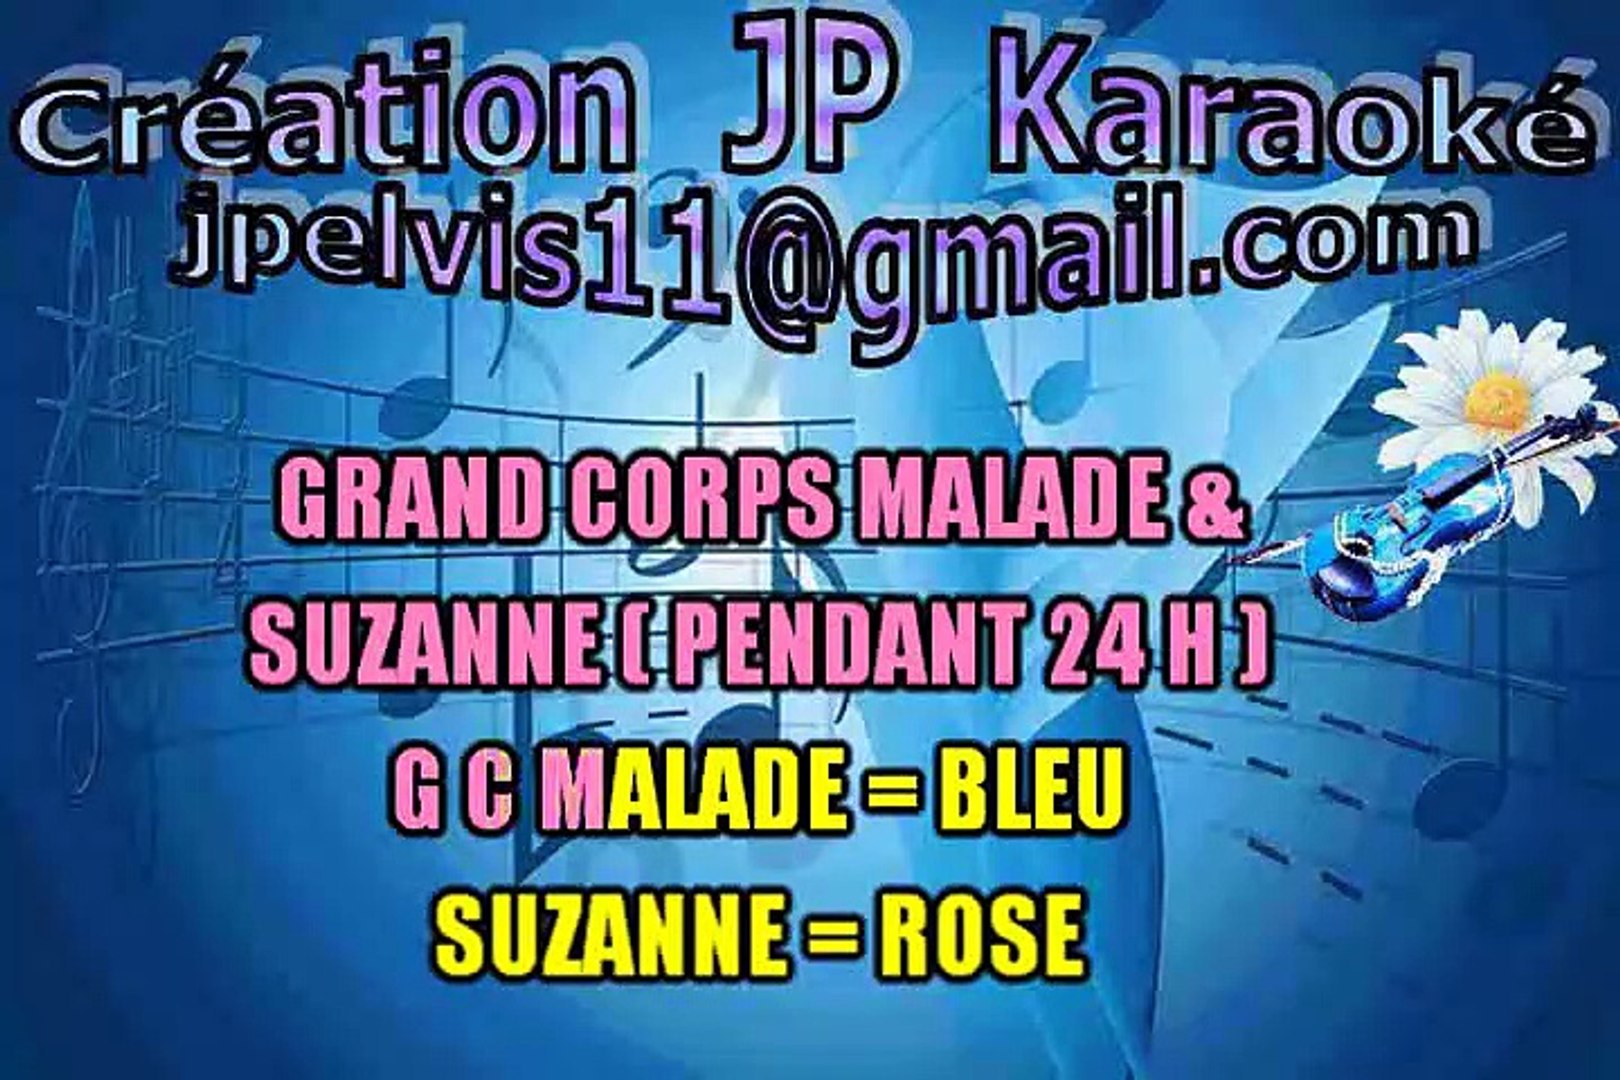 Paroles De Grand Corps Malade Pendant 24h KARAOKE Grand Corps Malade & Suzanne - Pendant 24 Heures - Vidéo Dailymotion